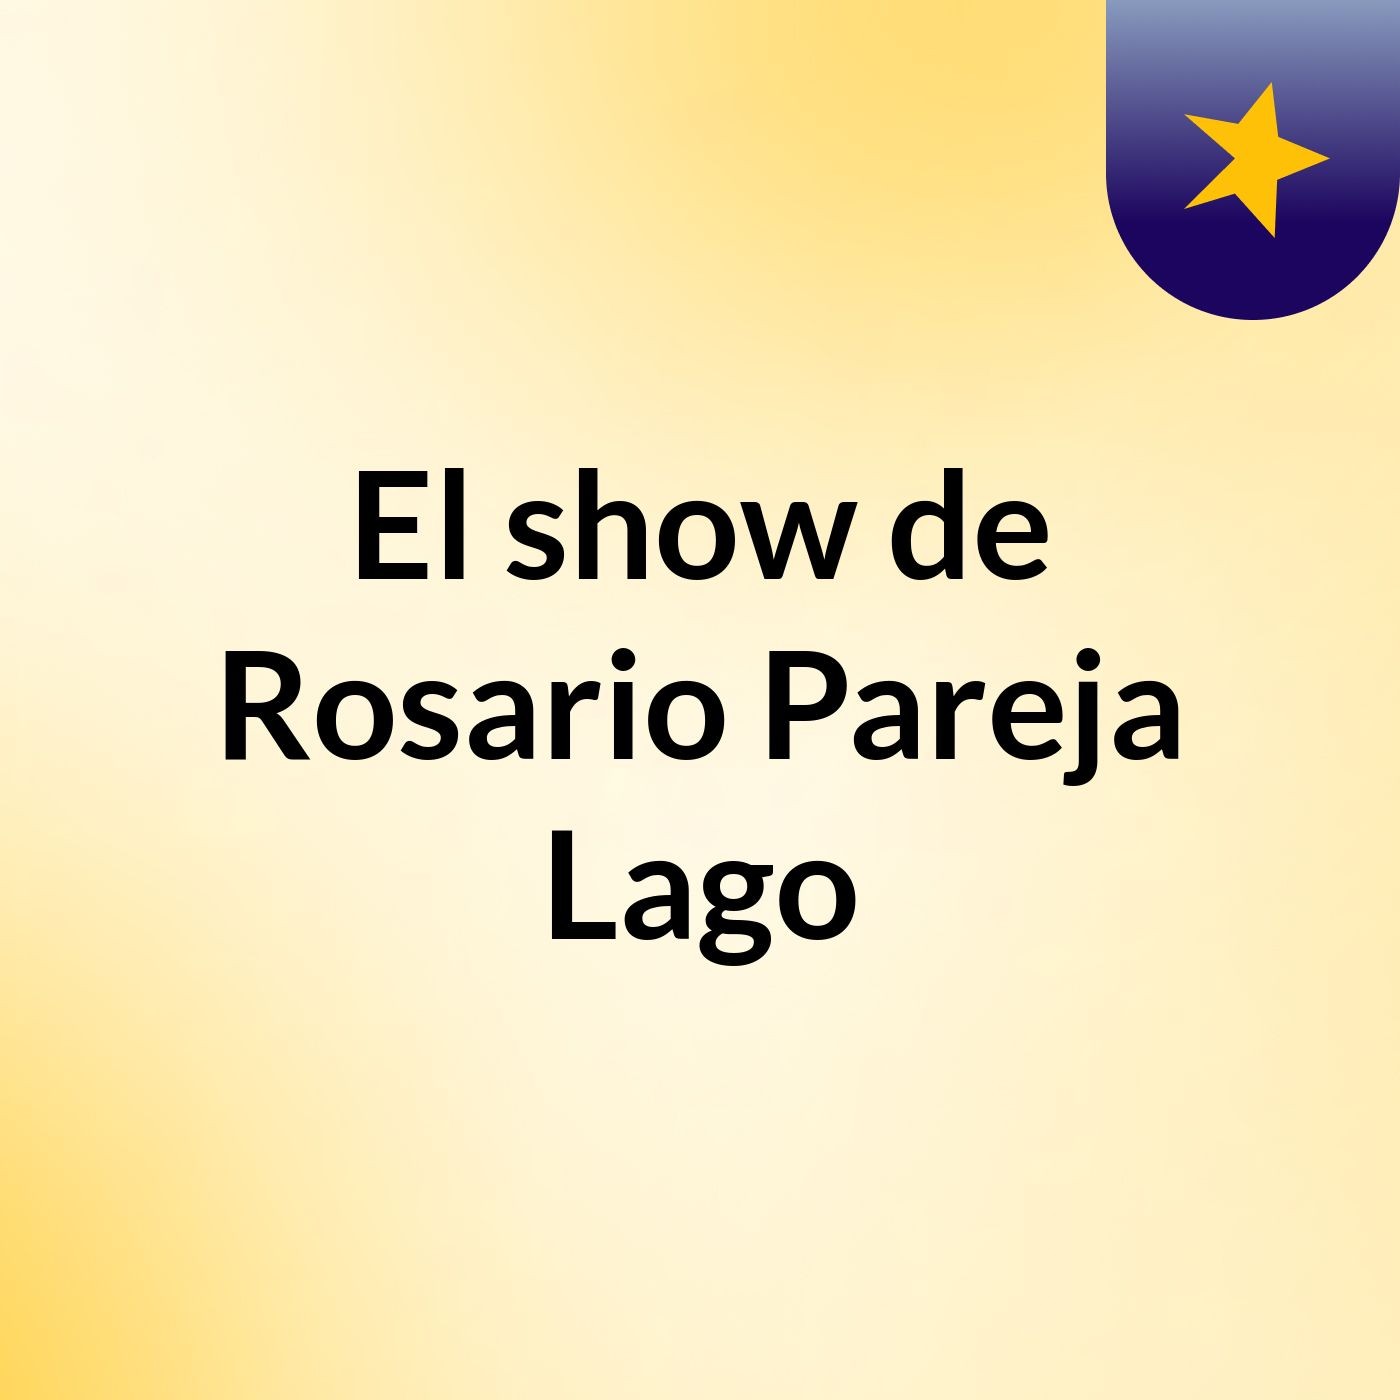 El show de Rosario Pareja Lago